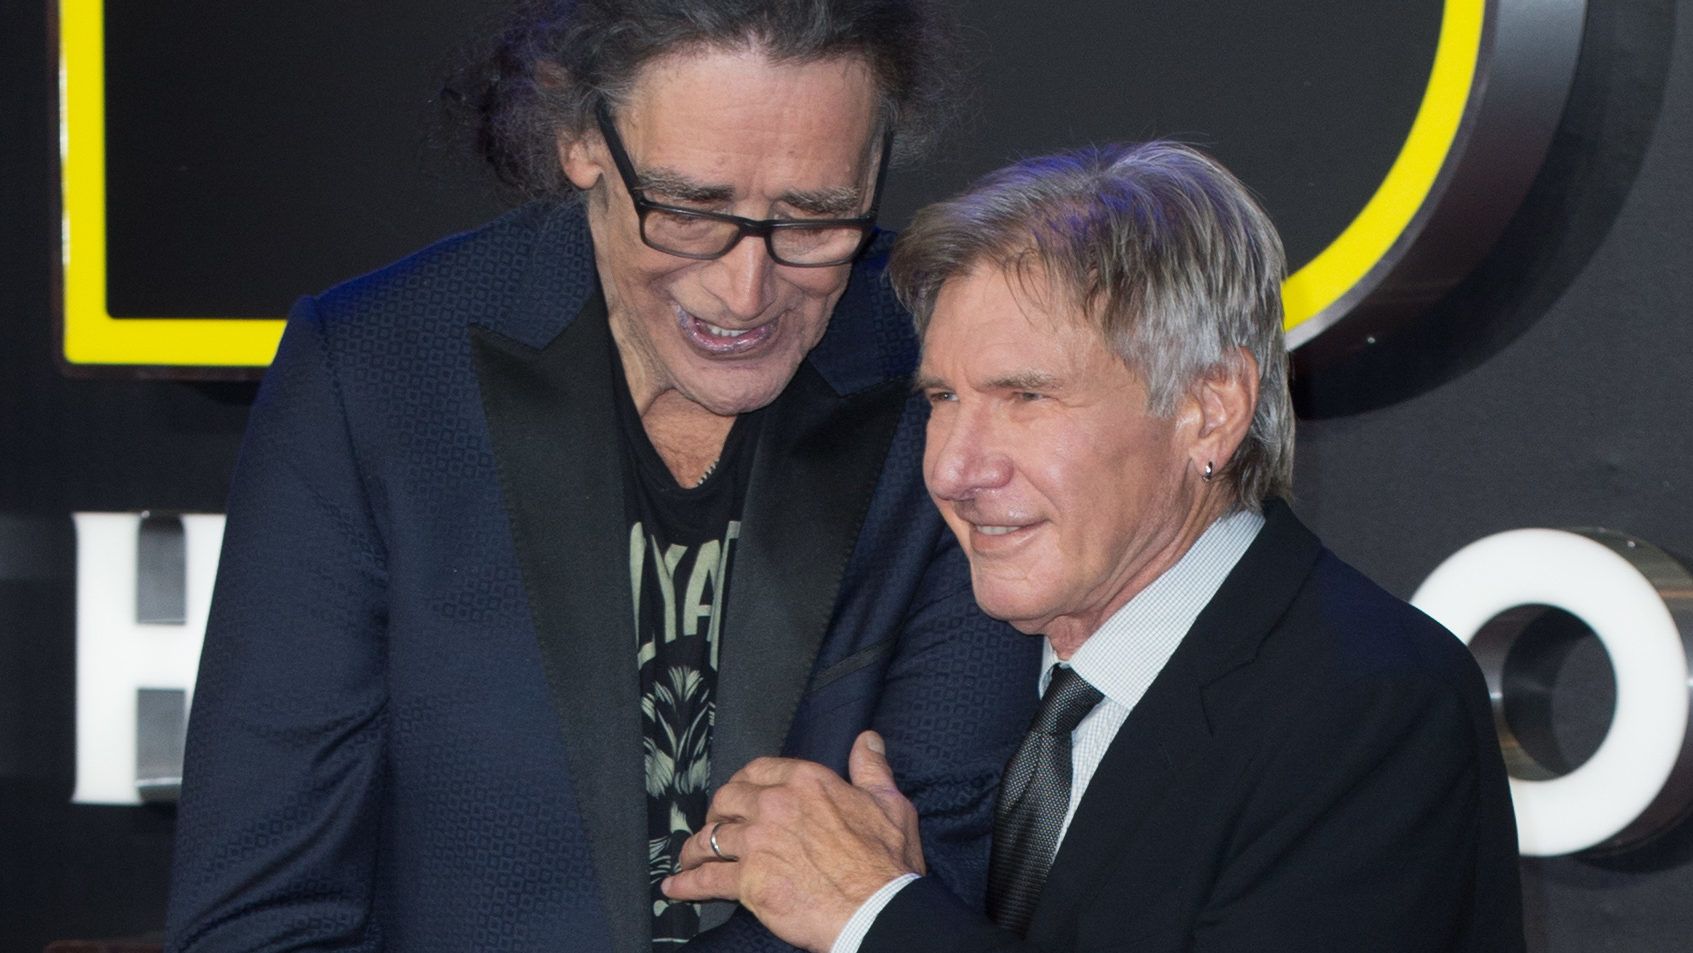 Harrison Ford ezekkel a sorokkal búcsúzott Chewbacca megformálójától